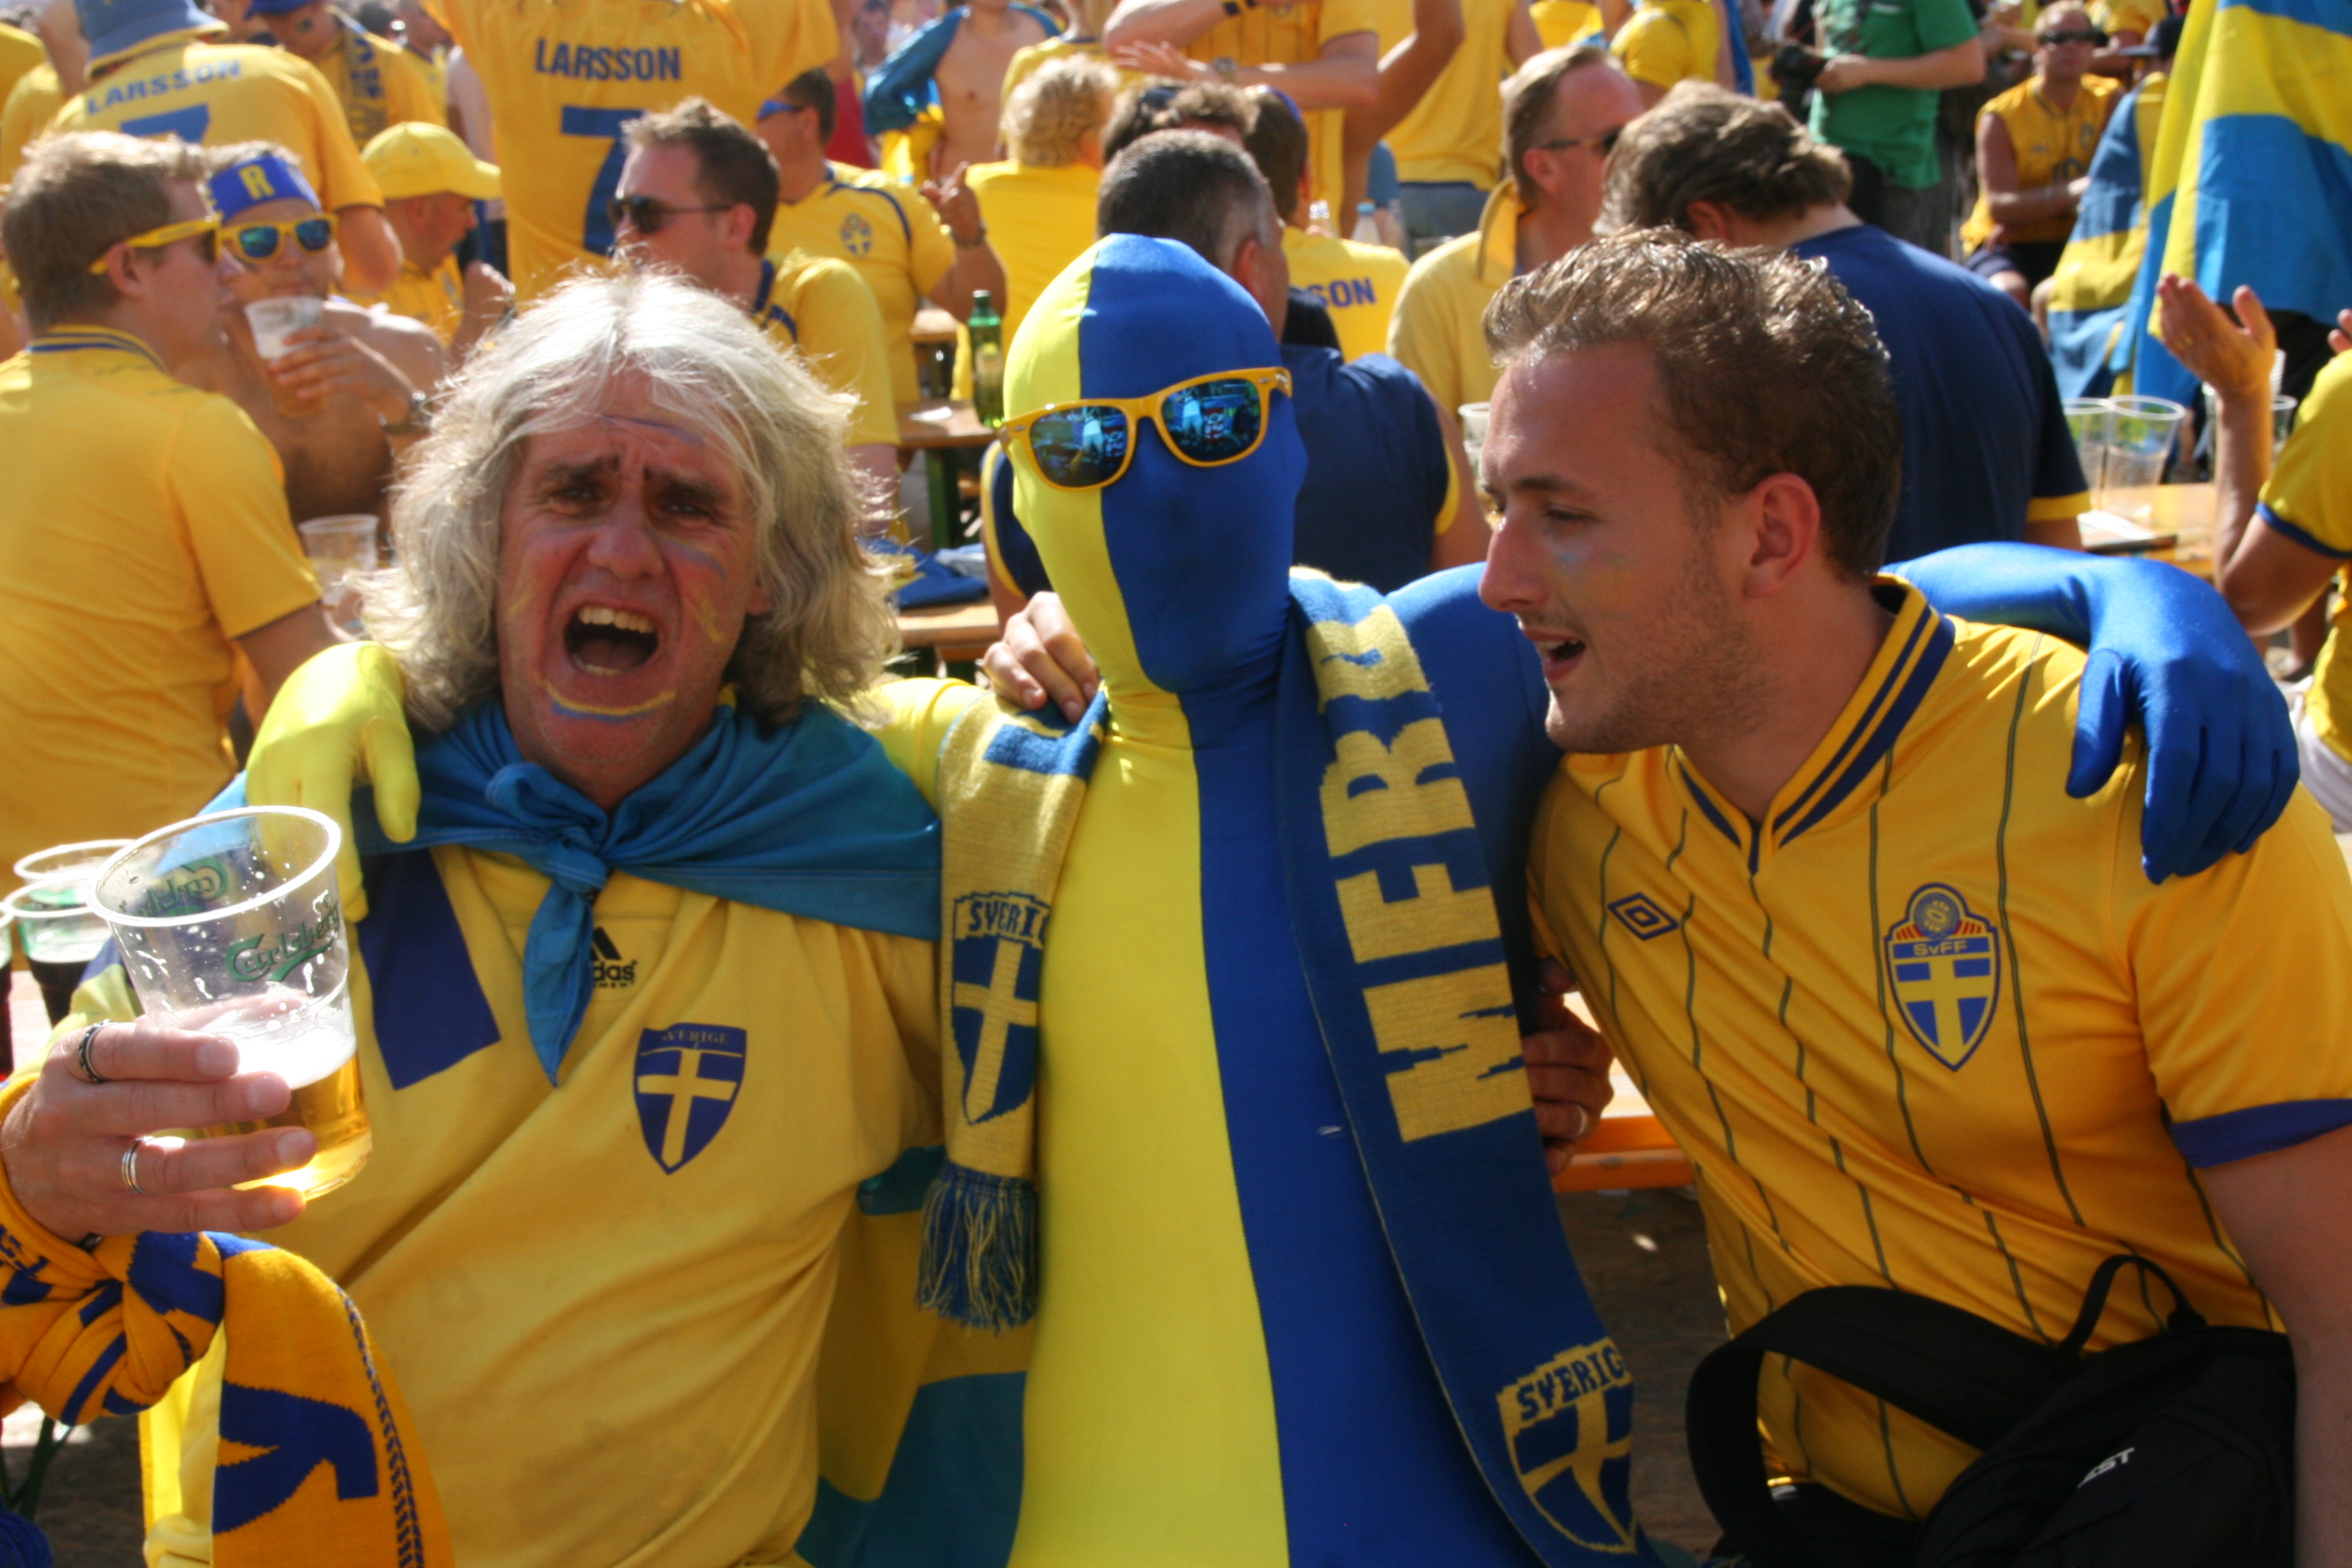  -Sverige vinner med 2-0, säger Kitte Hållen och Daniel Persson.